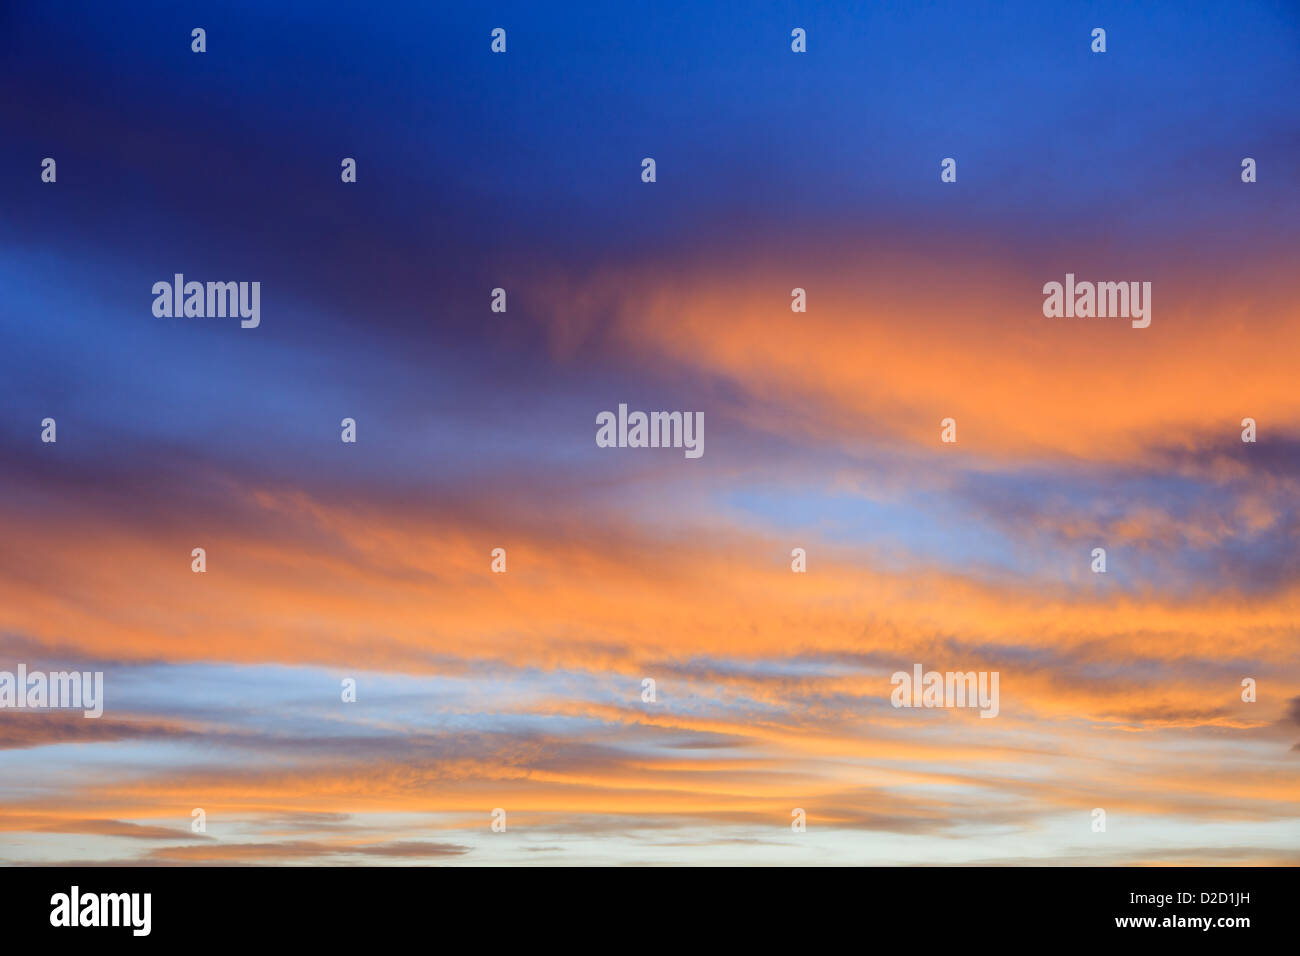 Fiery September Abend Skyscape mit Wolken durch die orange Sonnenuntergang gegen eine Verdunkelung blauer Himmel leuchtet bei Sonnenuntergang. England Großbritannien Großbritannien Stockfoto